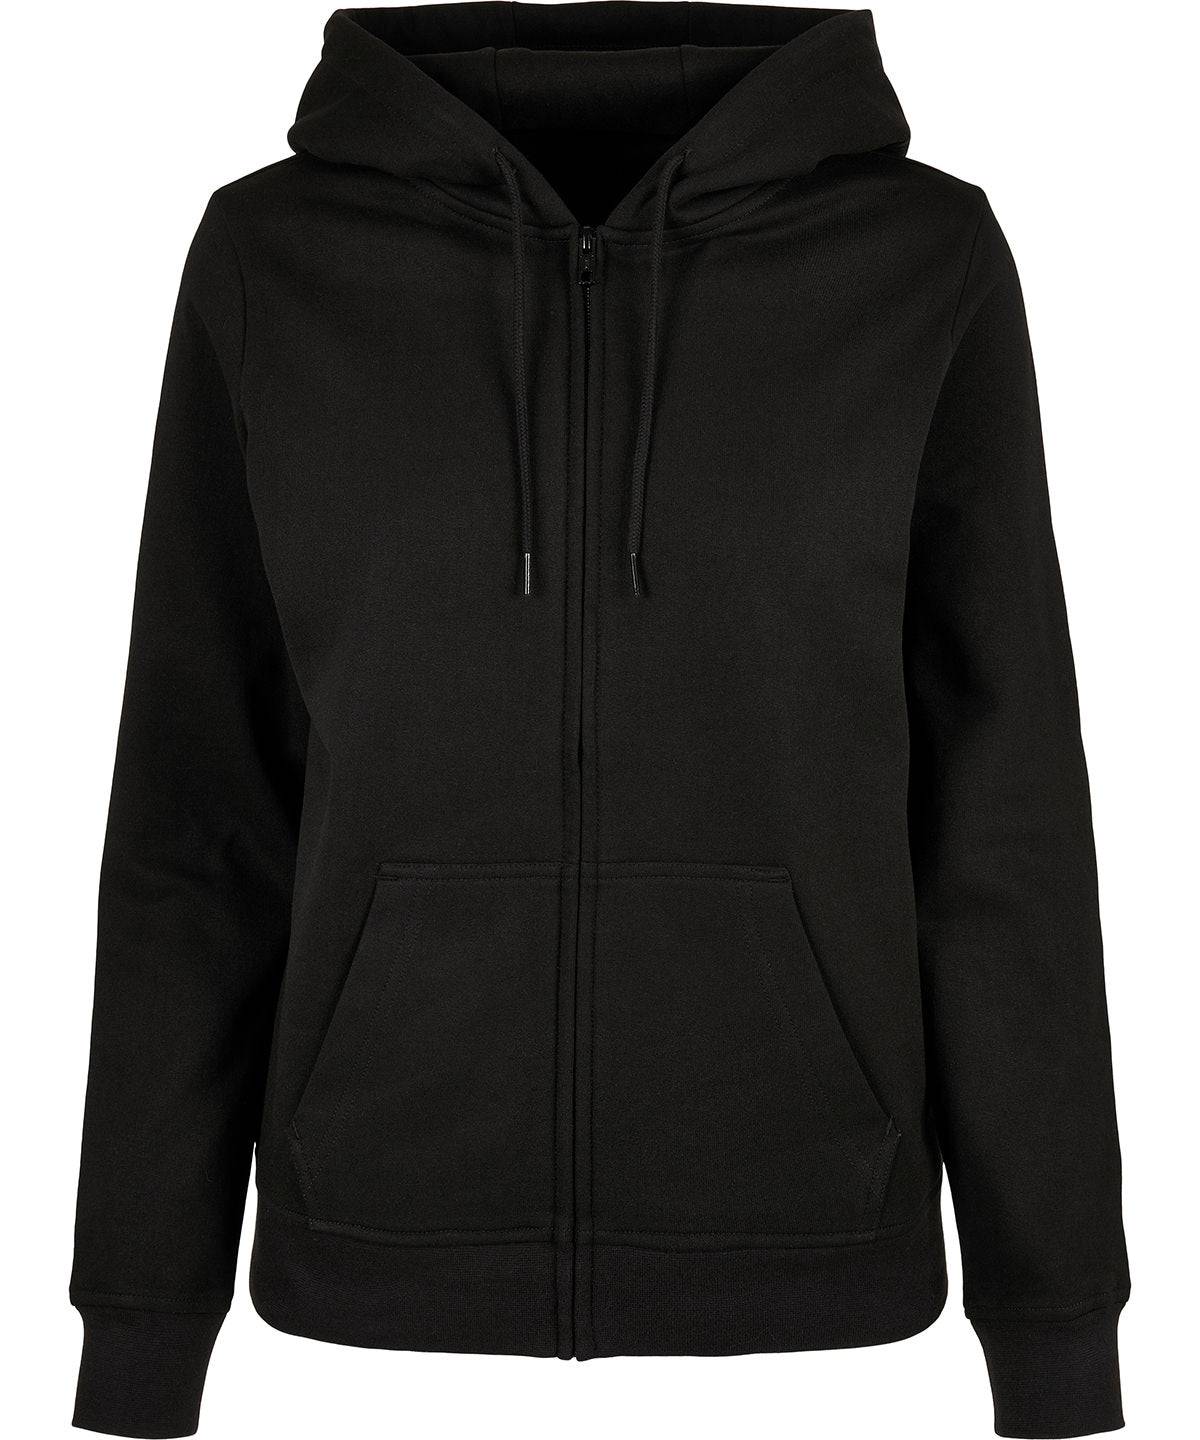 Heather Grey - Women’s basic zip hoodie